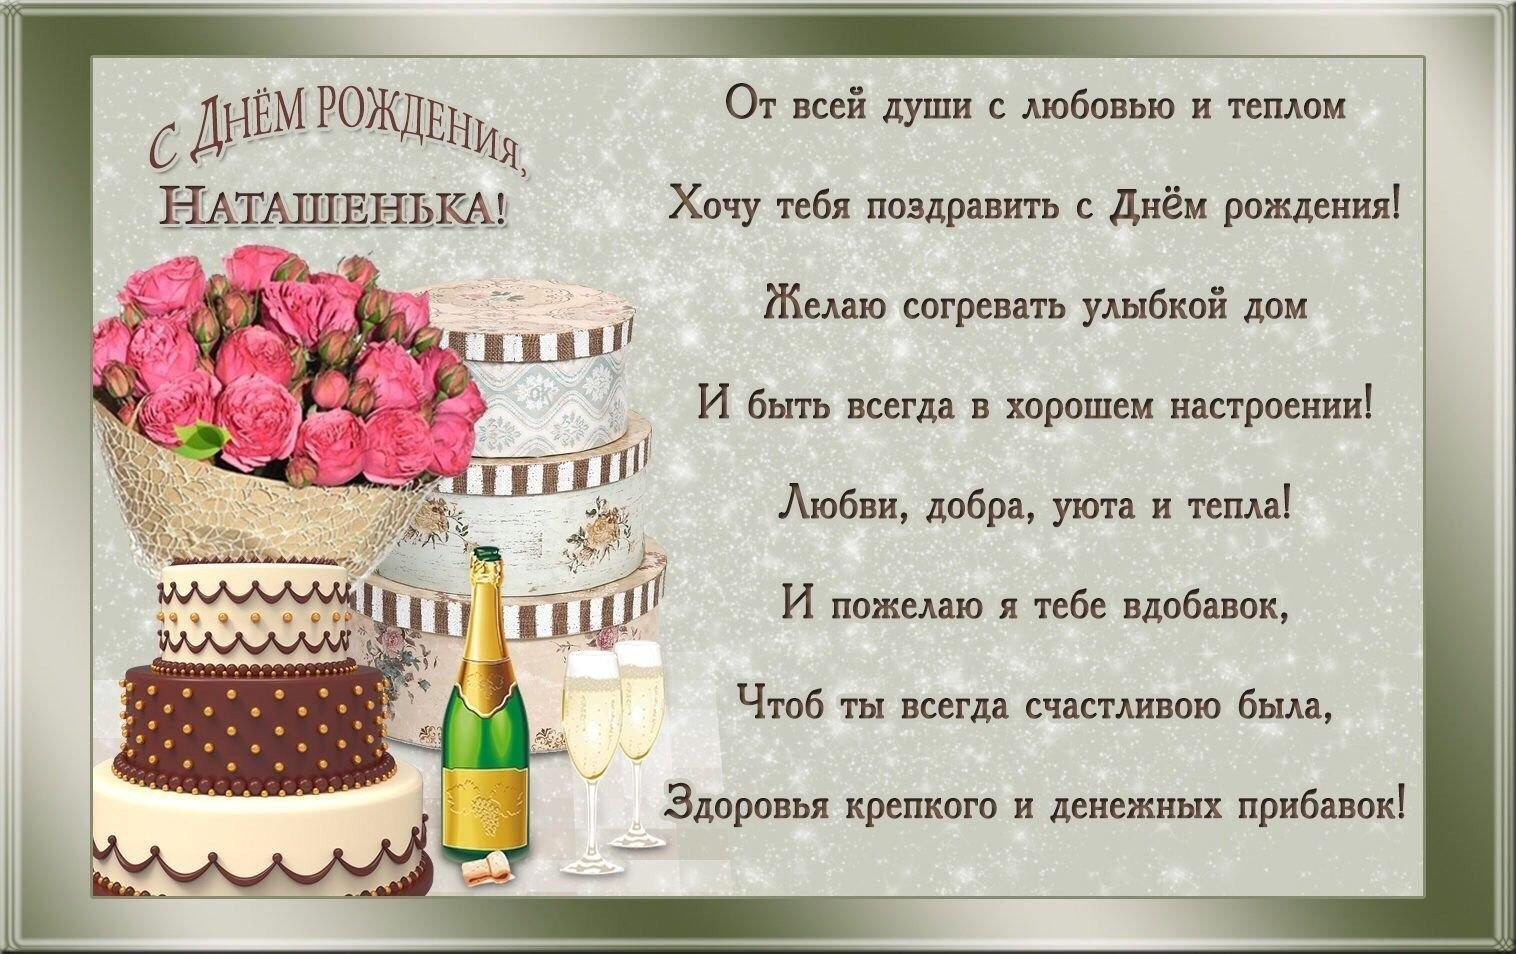 Смешное поздравление наташи с днем рождения. С днем рождения. Поздравления с днём рождения женщине. С днём рождения Наташенькс. С днём рождения Наташенька.